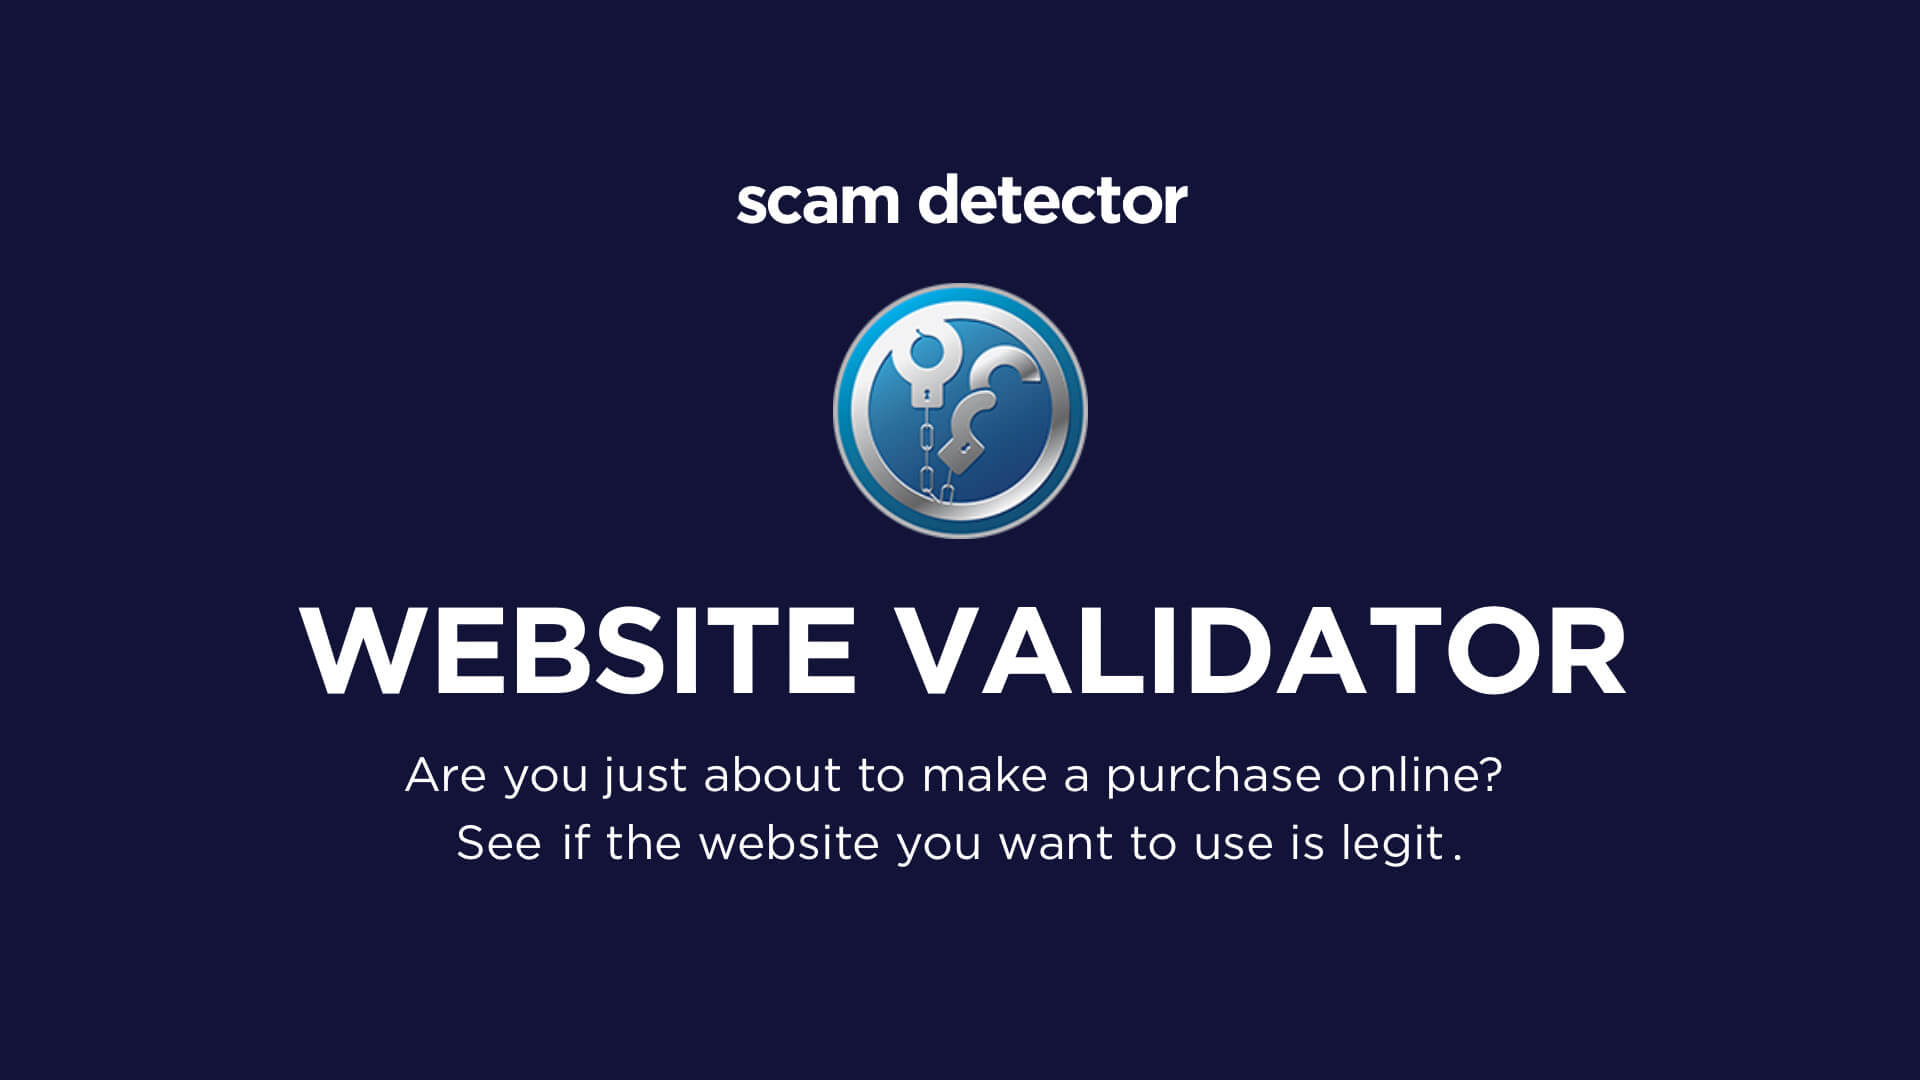 www.scam-detector.com